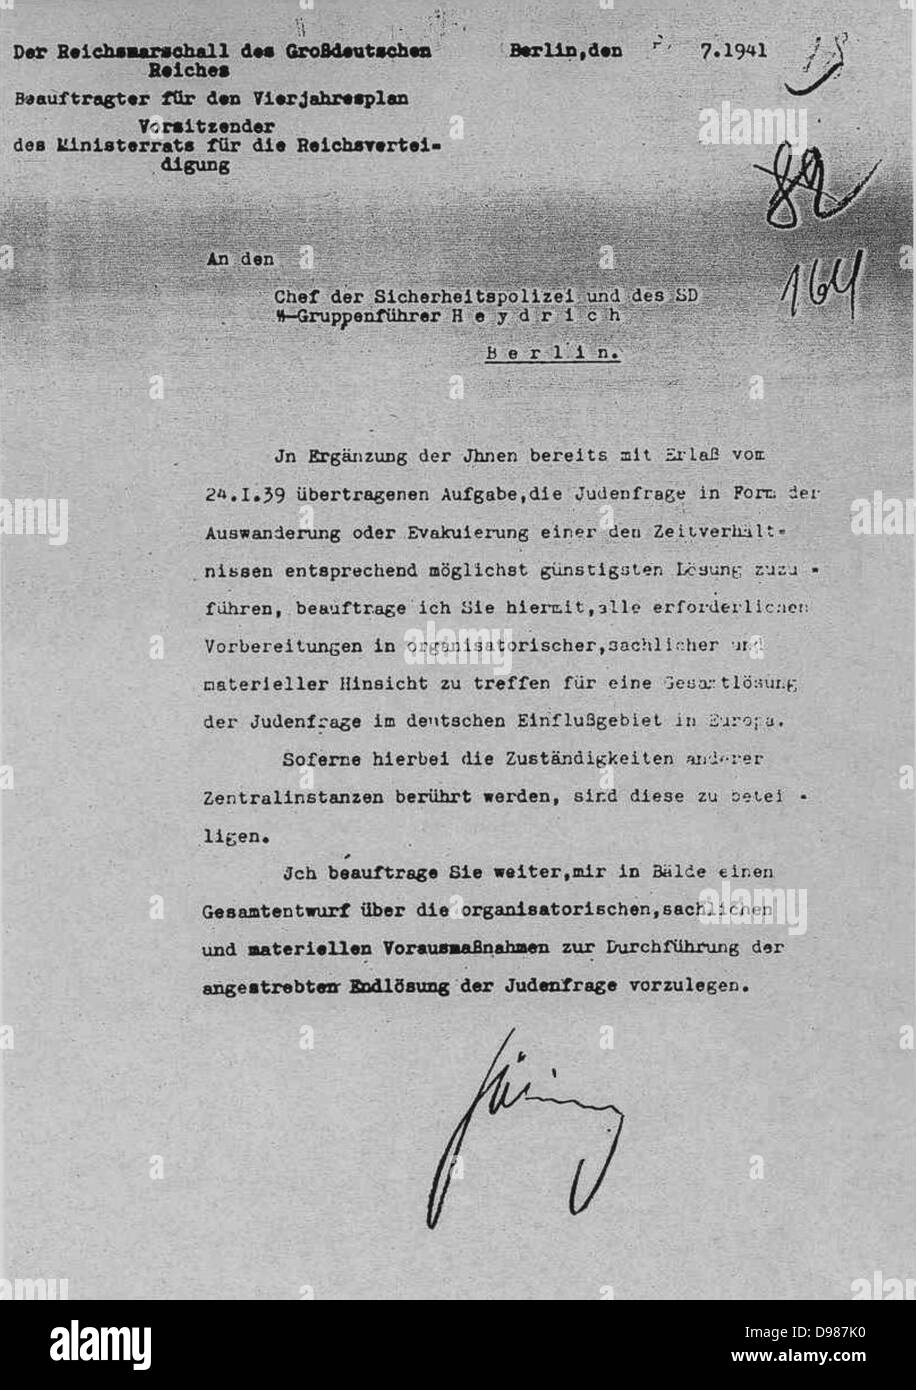 Hermann Göring (Goering) lettera del 31 luglio 1941, a Reinhard Heydrich che autorizza la soluzione finale alla questione ebraica. La Conferenza di Wansee, 20 gennaio 1942 ha informato i dirigenti dei reparti nazisti che si occupano di politiche ebraica che Heydrich era in carica della soluzione finale. Foto Stock